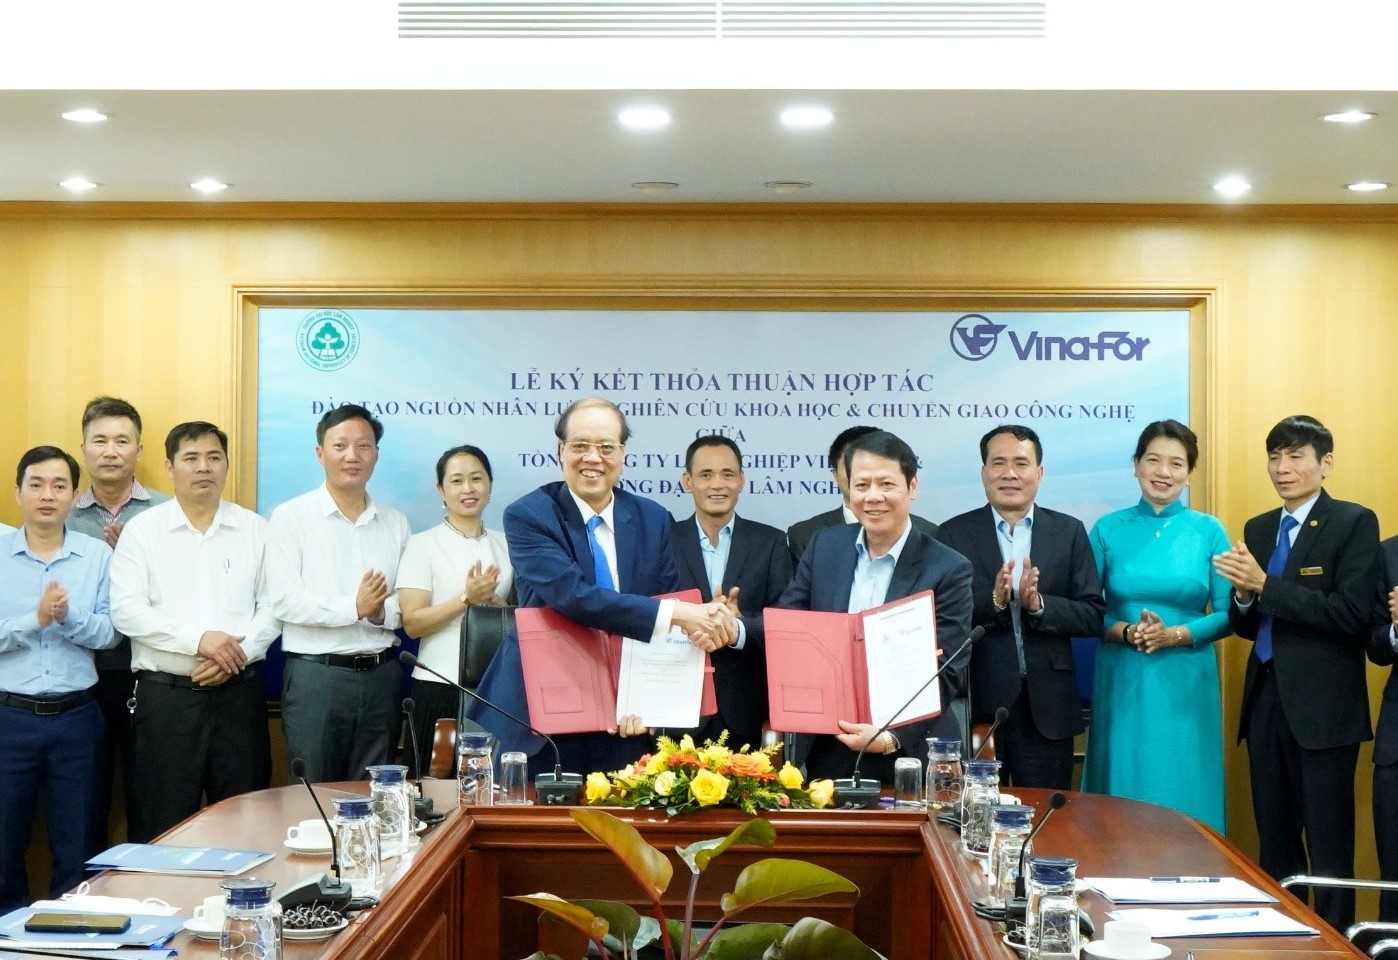 Lễ ký kết thỏa thuận hợp tác Đào tạo nguồn nhân lực – Nghiên cứu khoa học và chuyển giao công nghệ giữa Tổng Công ty Lâm nghiệp Việt Nam và Trường Đại học Lâm nghiệp